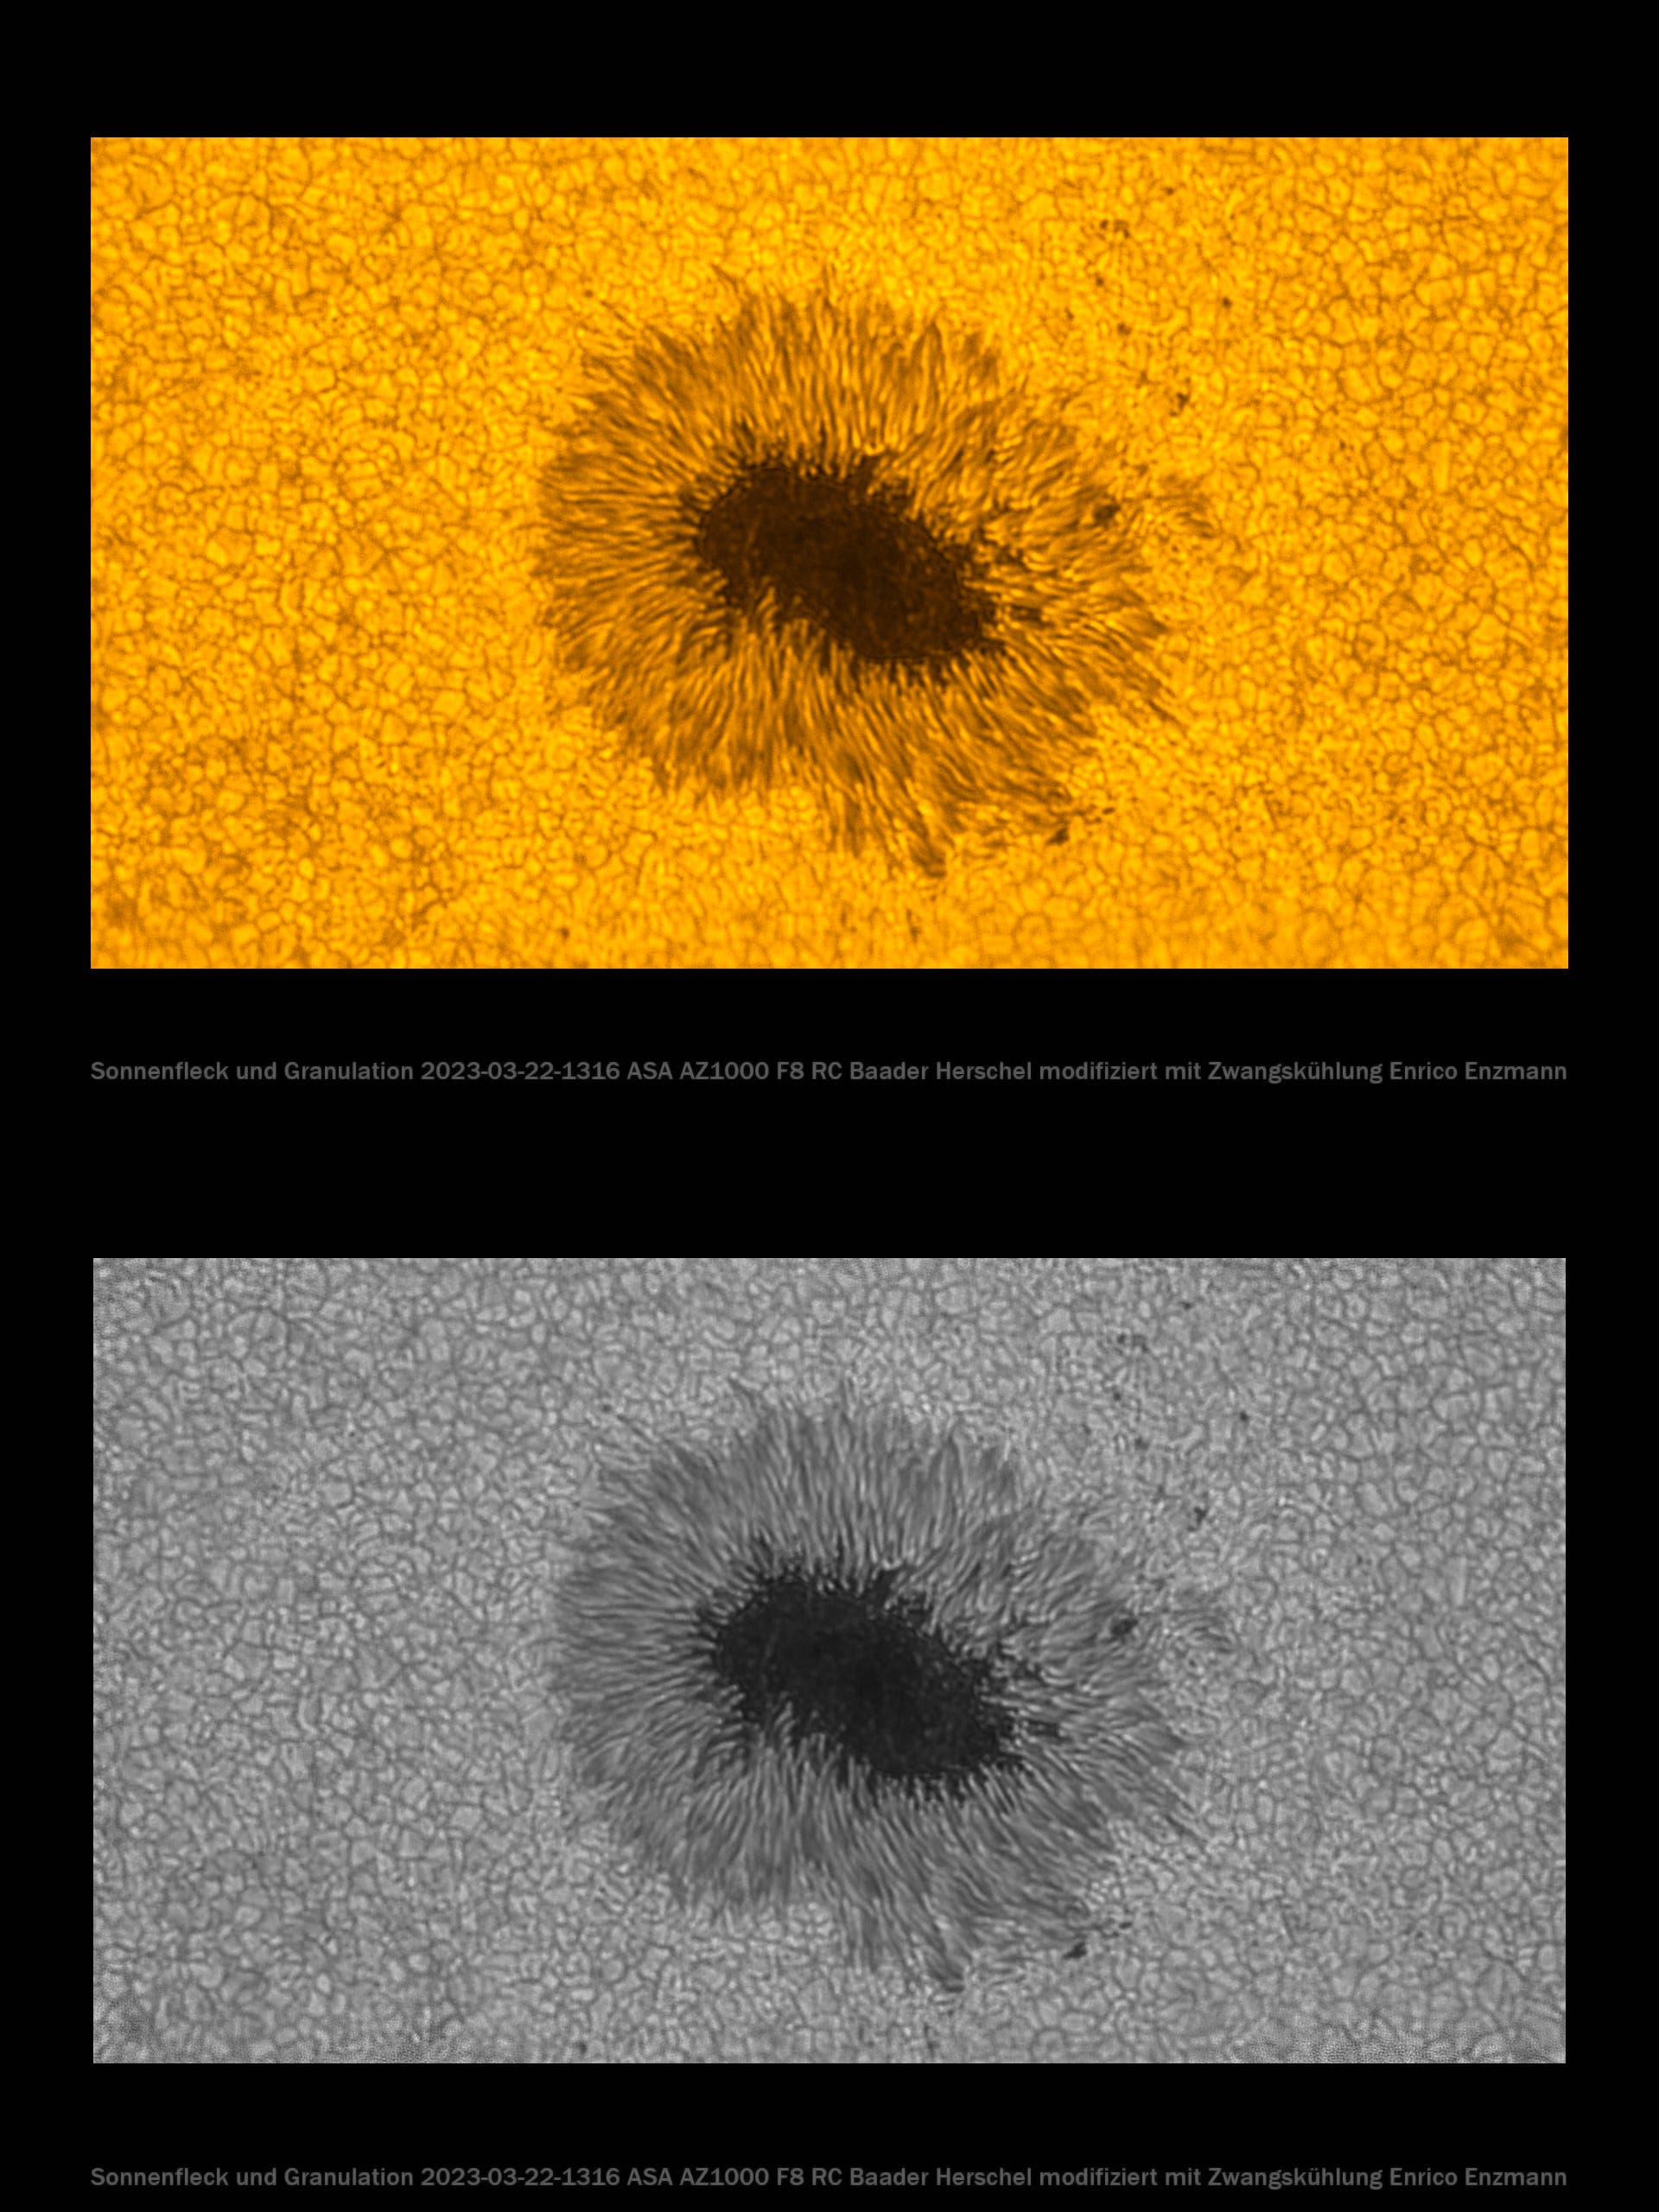 Sonnenfleck-Vergleichsbild 22. März 2023